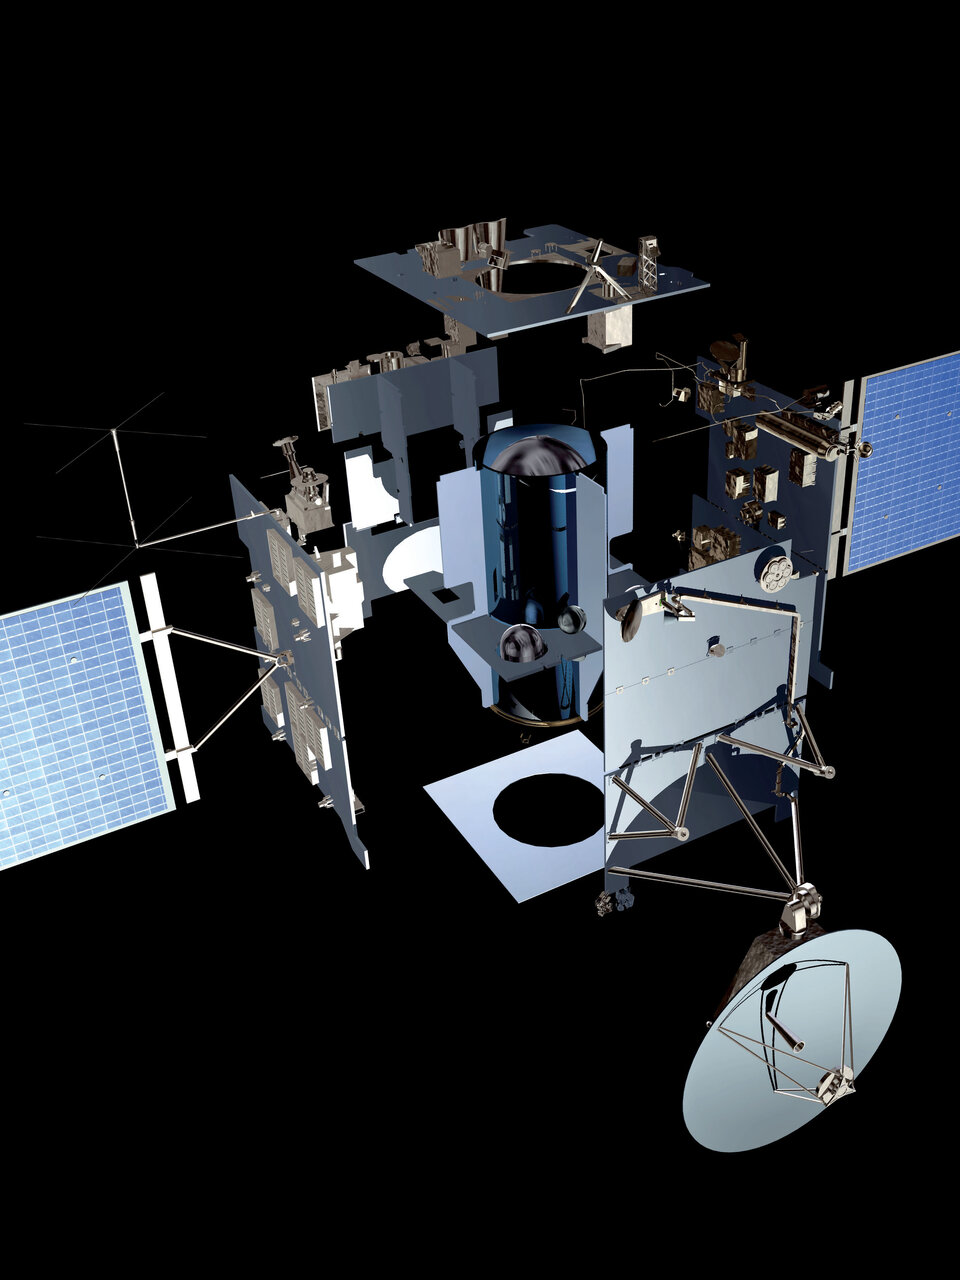 Op deze afbeelding van Rosetta zijn de navigatiecamera's bovenaan te zien